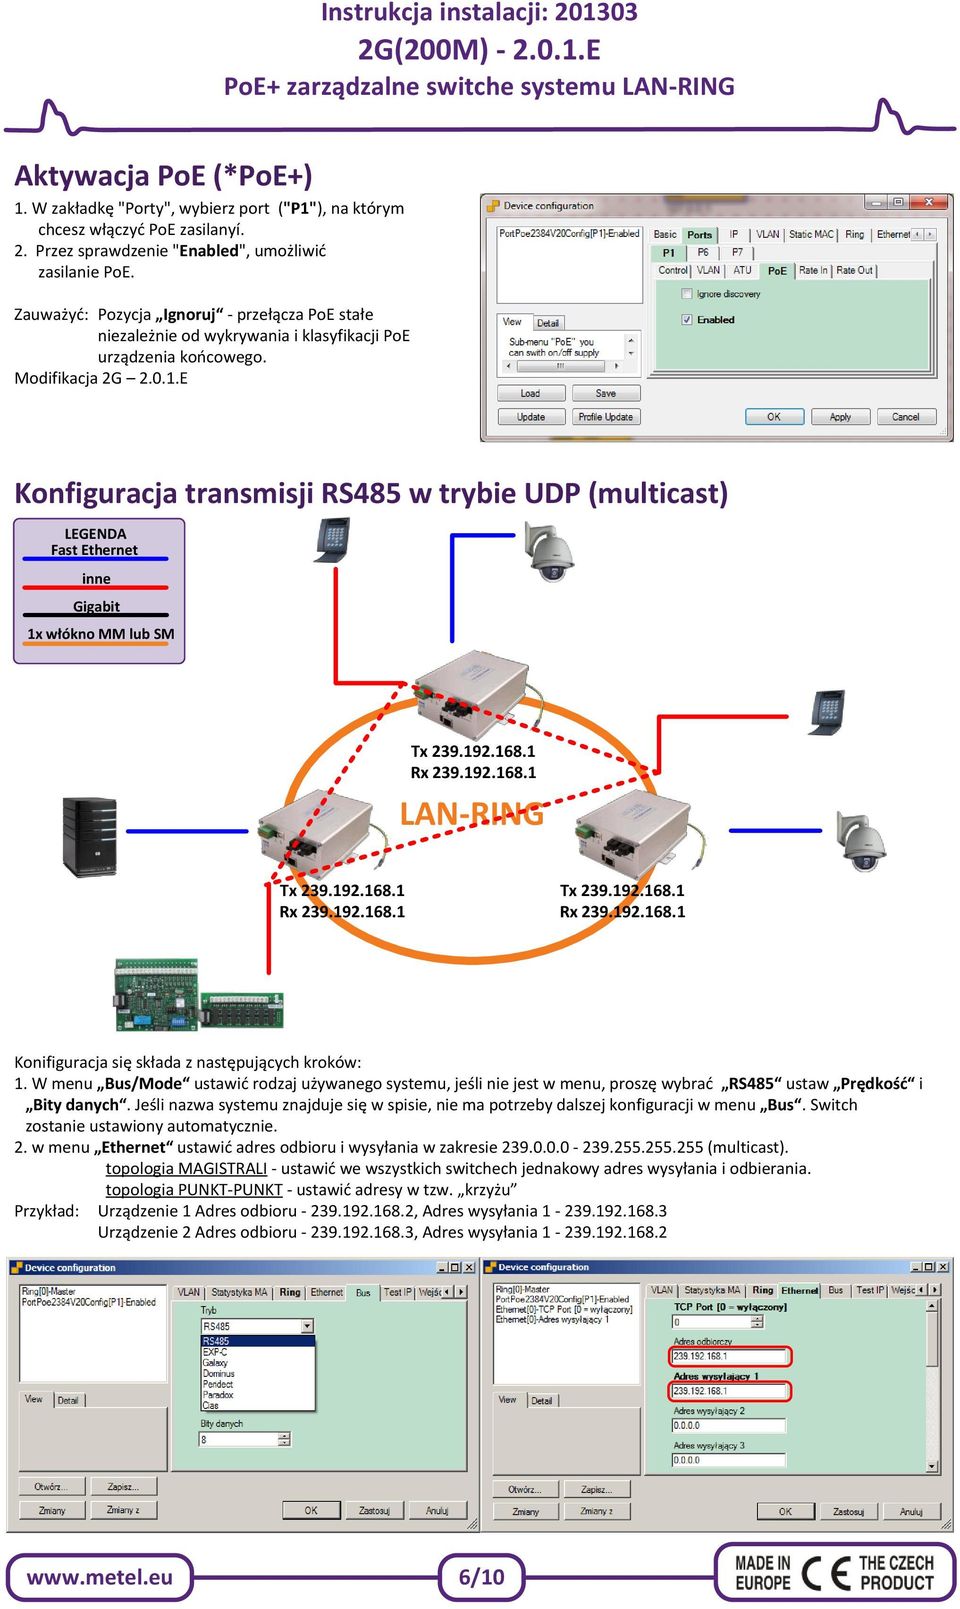 E Konfiguracja transmisji w trybie UDP (multicast) LEGENDA Fast Ethernet inne Gigabit 1x włókno MM lub SM Tx 239.192.168.1 Rx 239.192.168.1 LAN-RING Tx 239.192.168.1 Rx 239.192.168.1 Tx 239.192.168.1 Rx 239.192.168.1 Konifiguracja się składa z następujących kroków: 1.